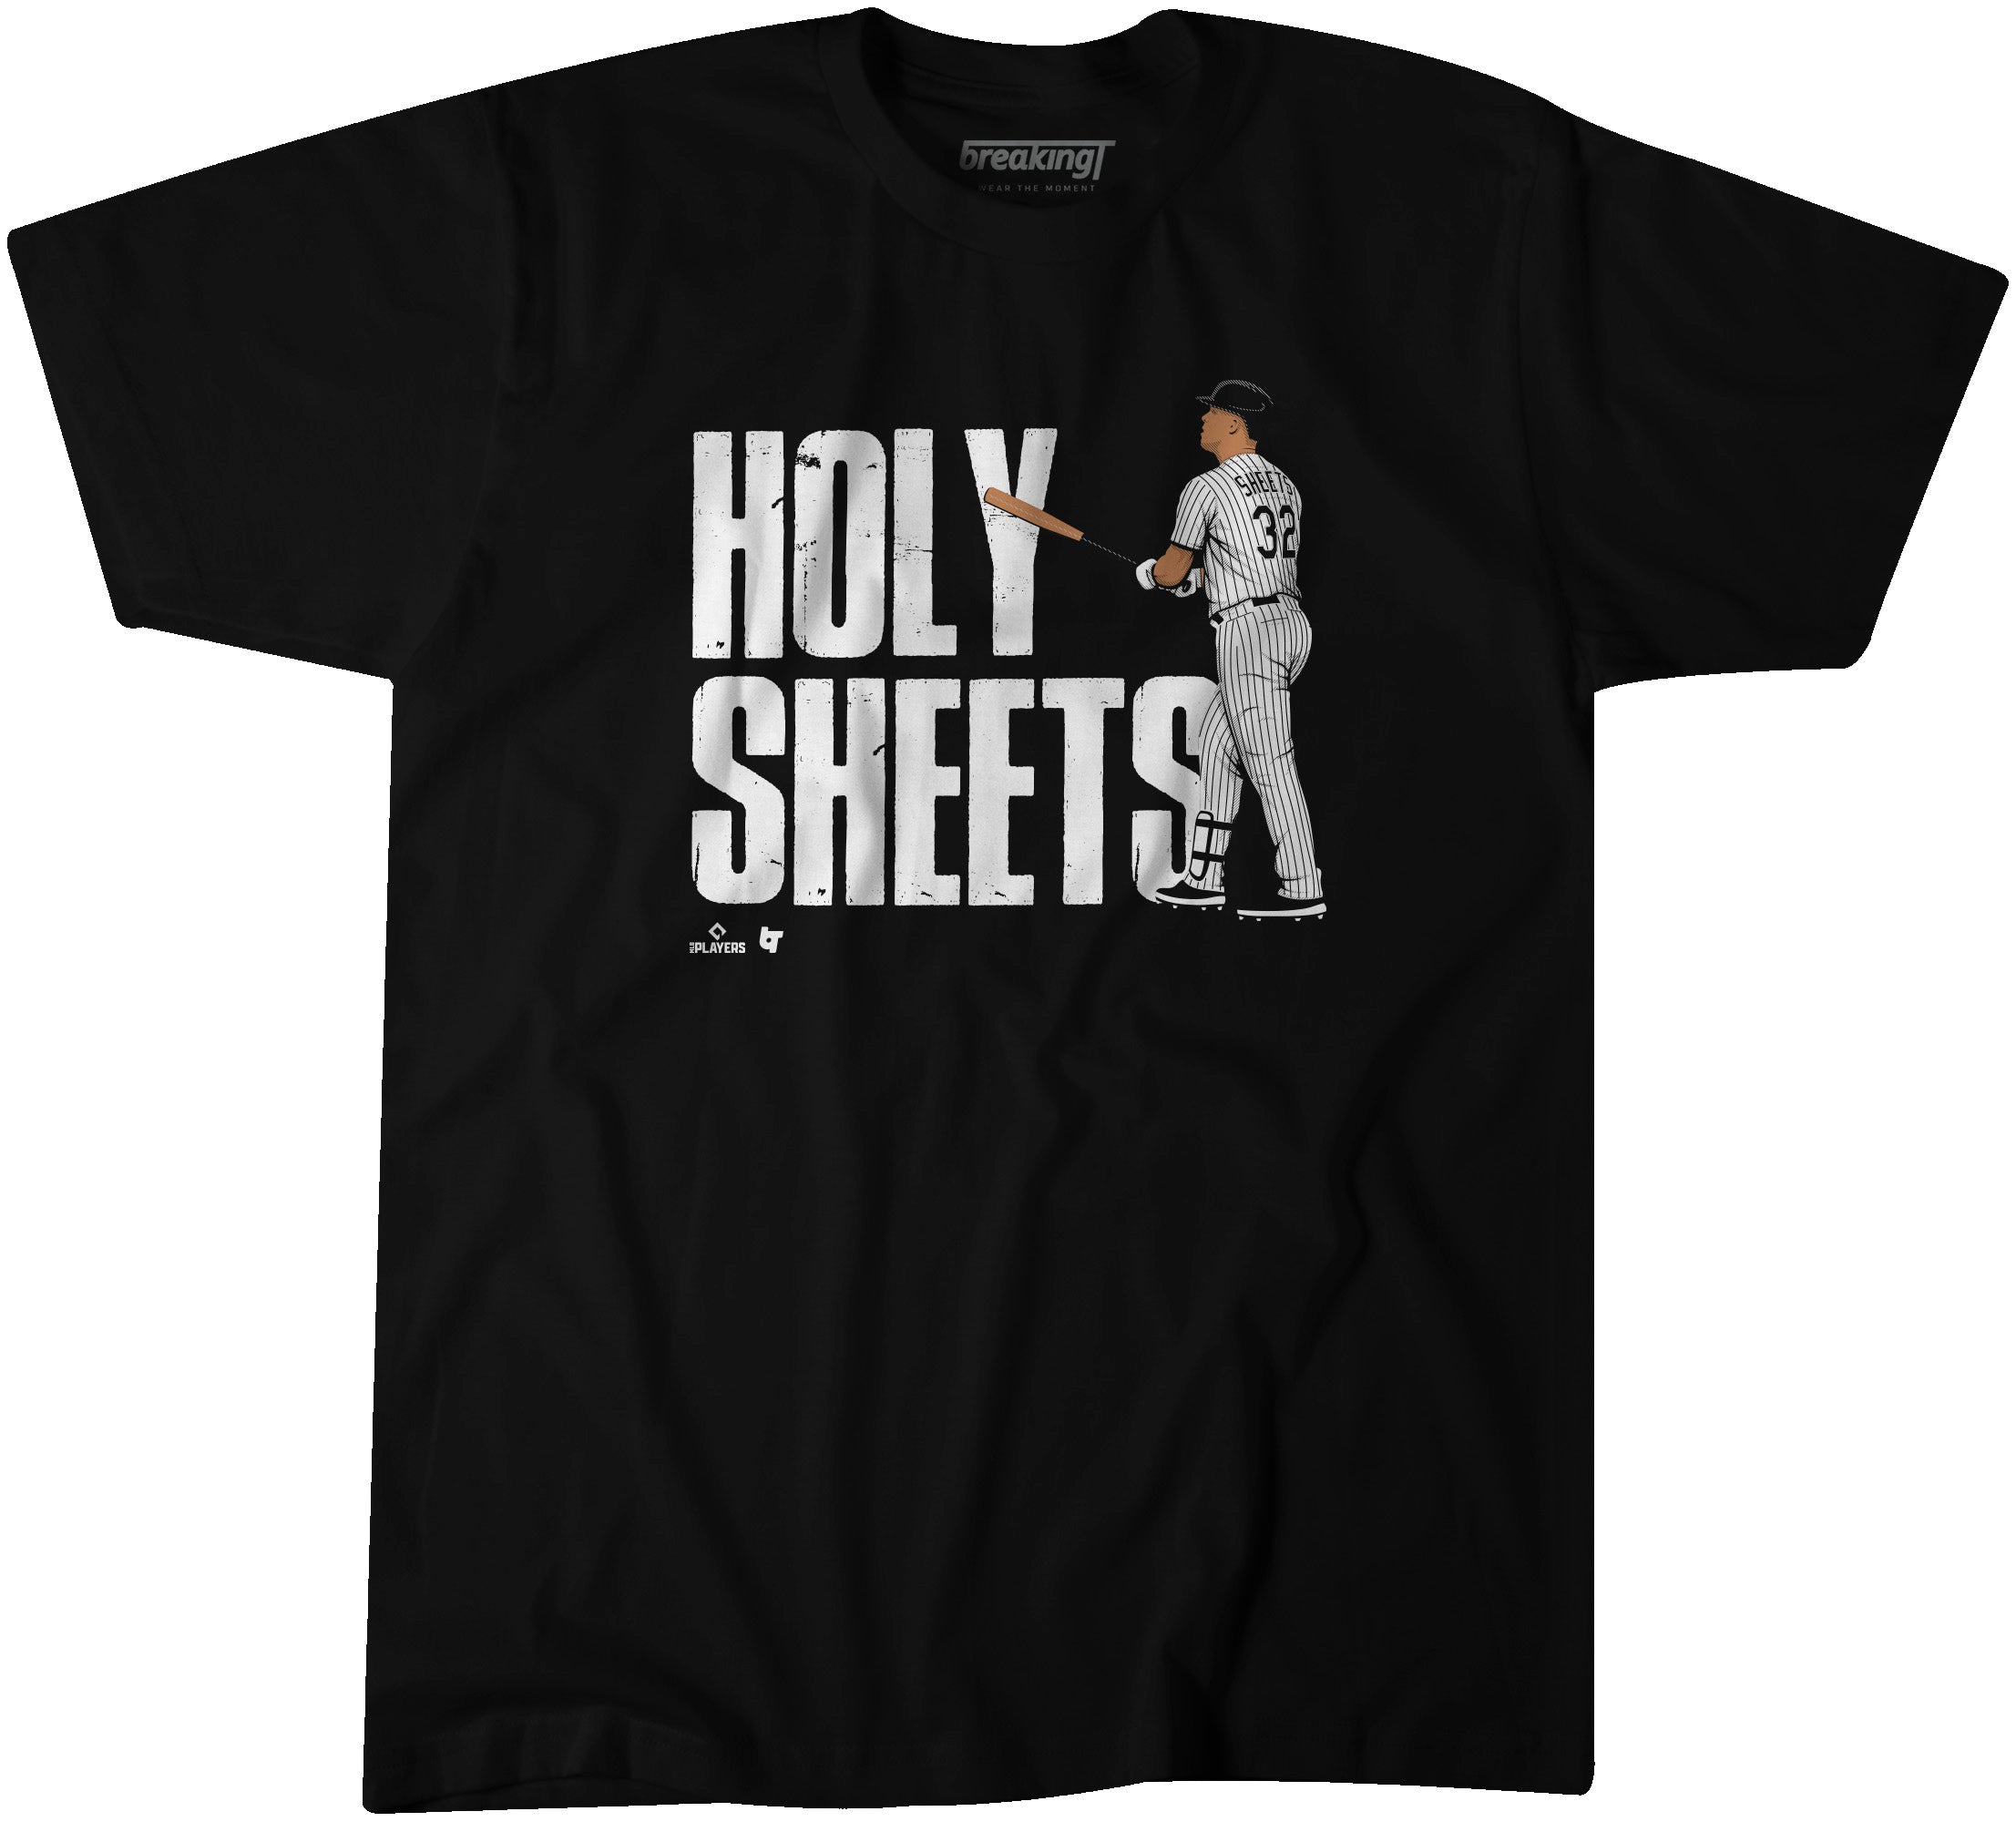 HOLY SHEETS! Gavin Sheets has his 1st career @mlb home run.